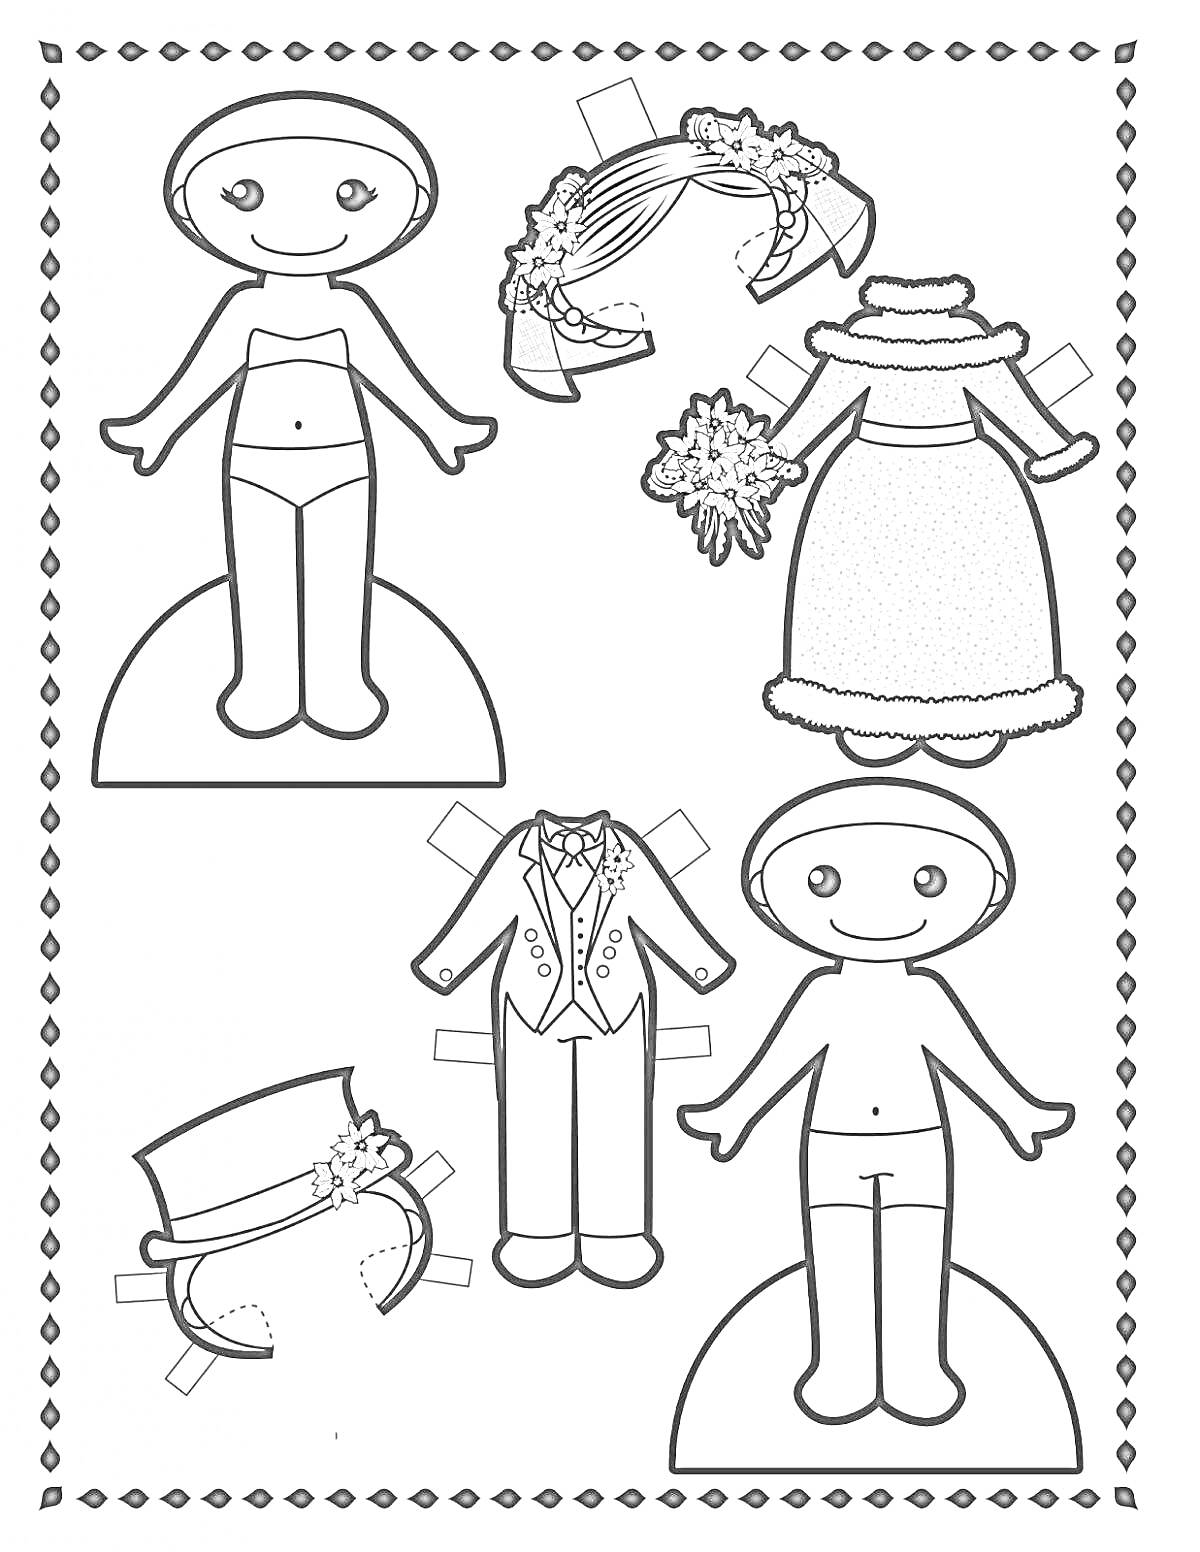 Раскраска Вырезалка для мальчиков: два мальчика, фрак с цилиндром, свадебное платье с букетом